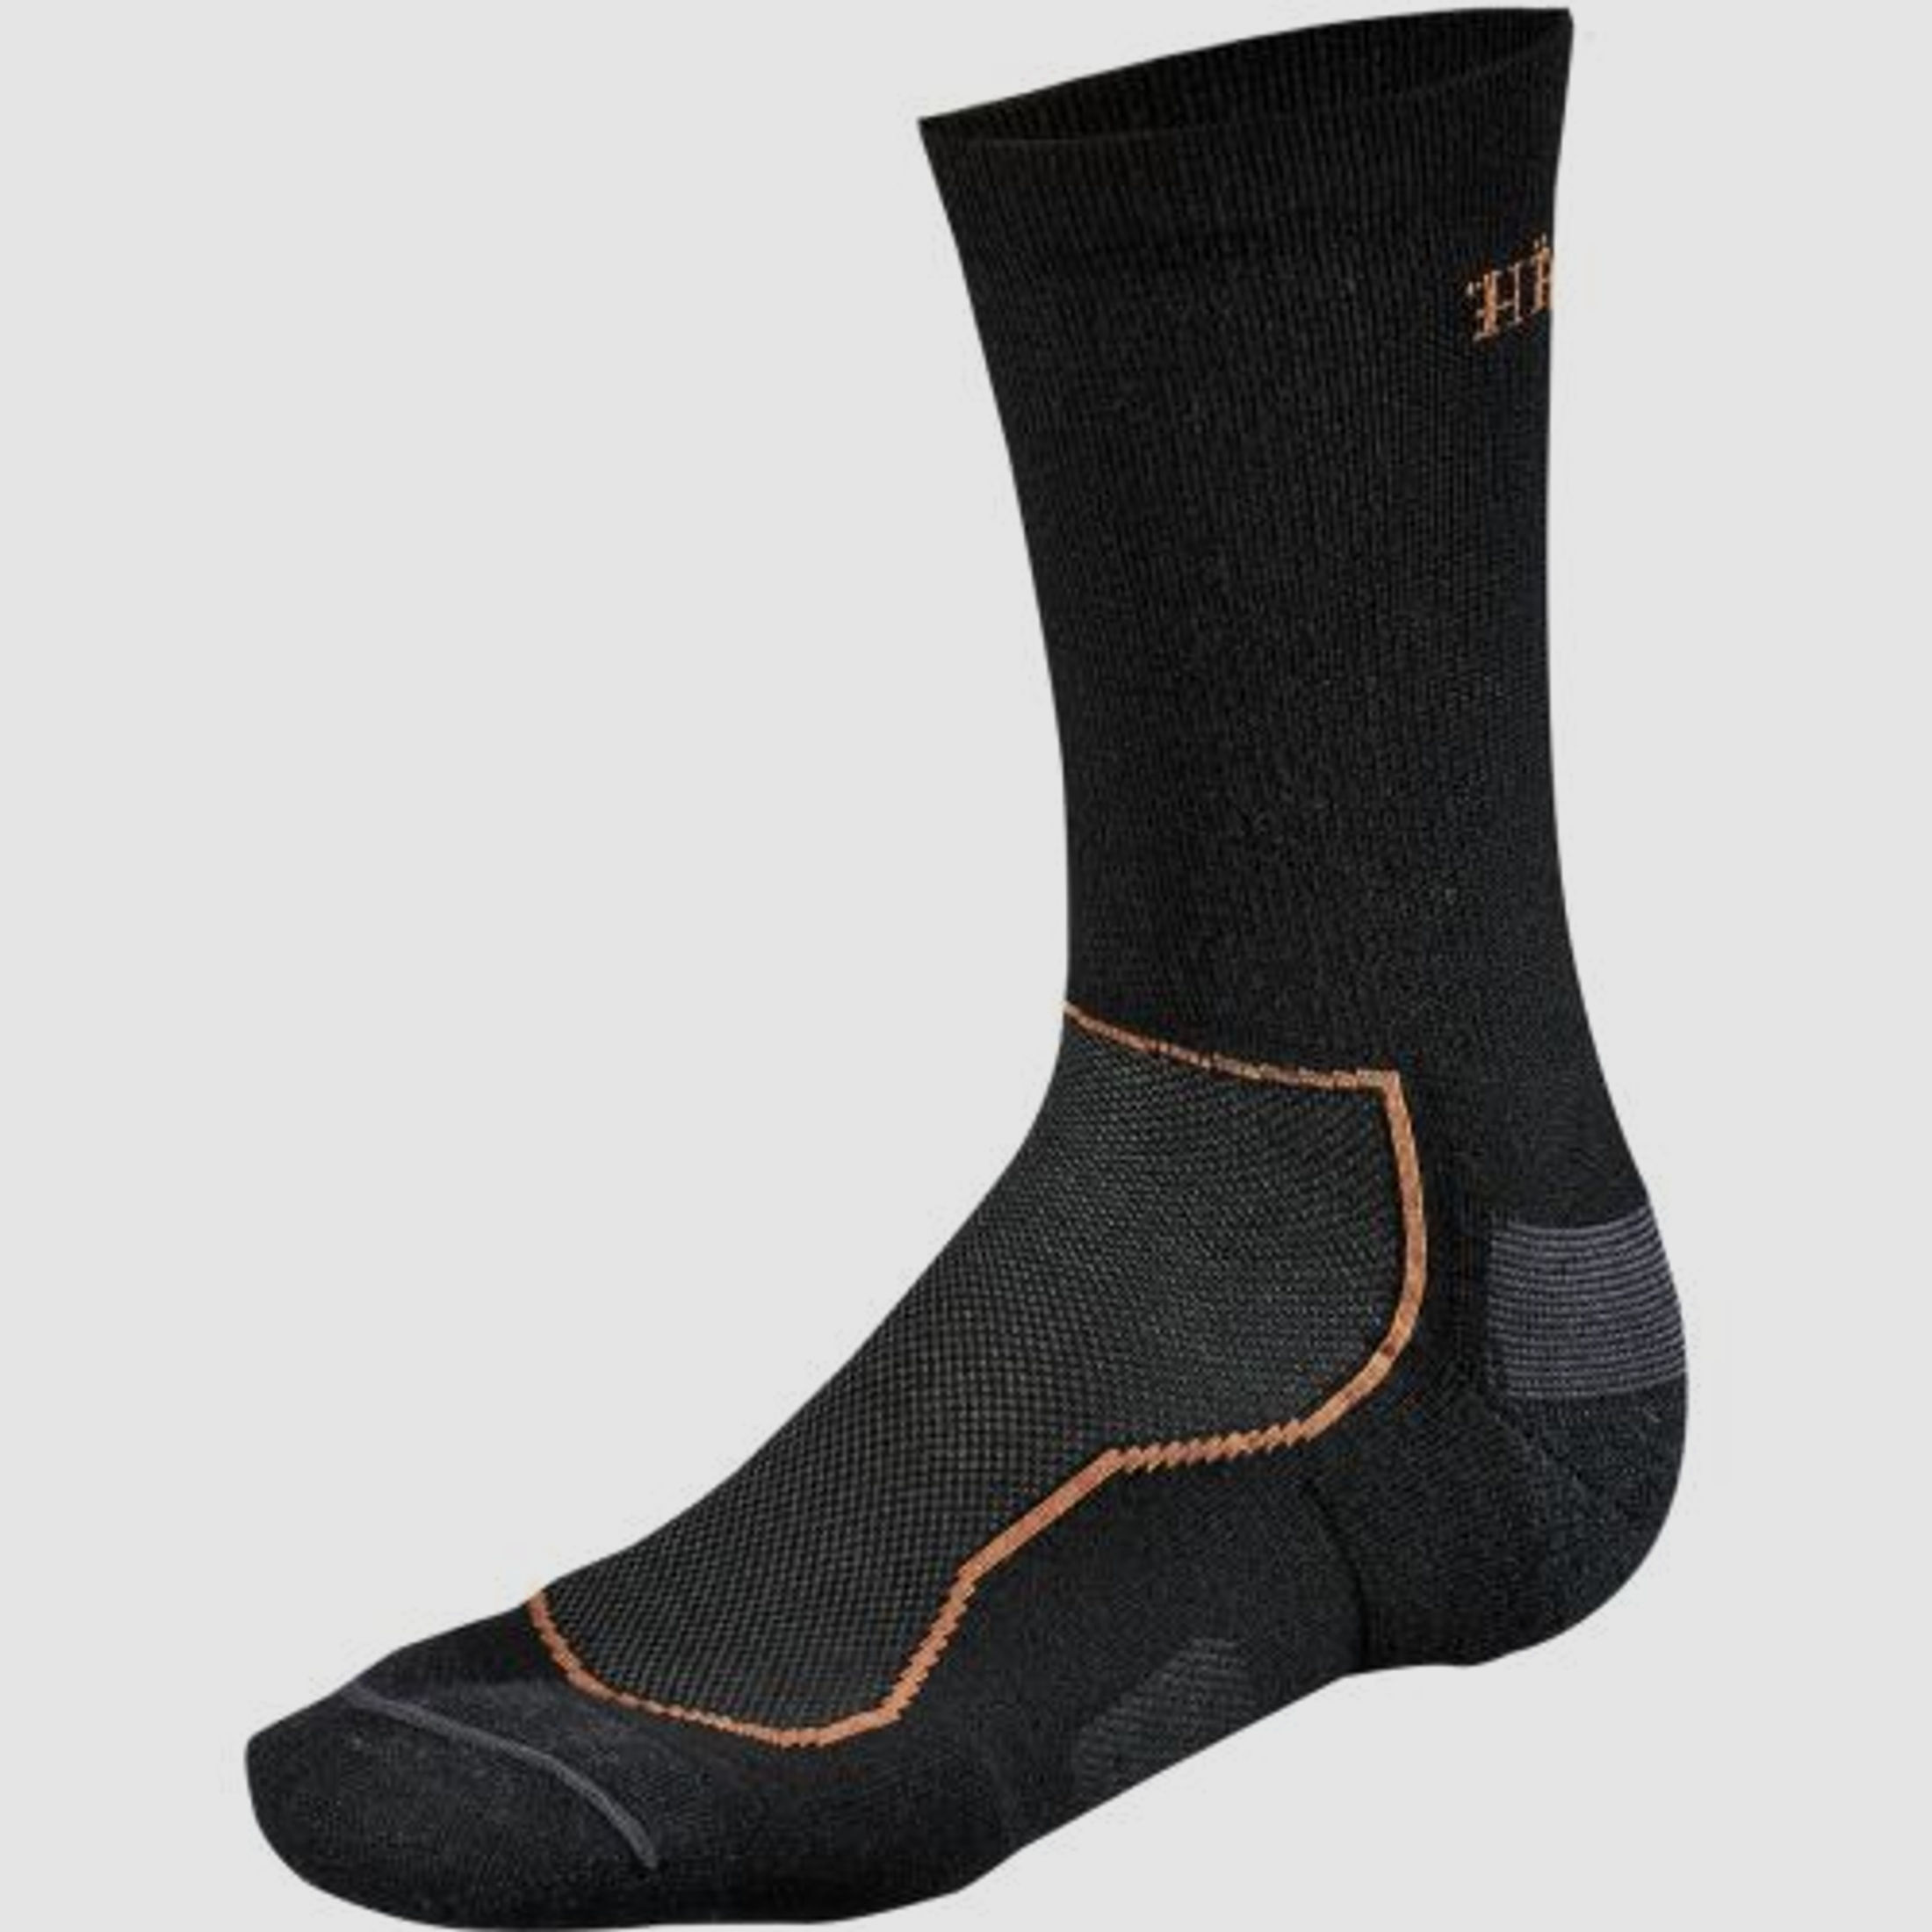 H?rkila All Season Wool II Socke, schwarz 46-50